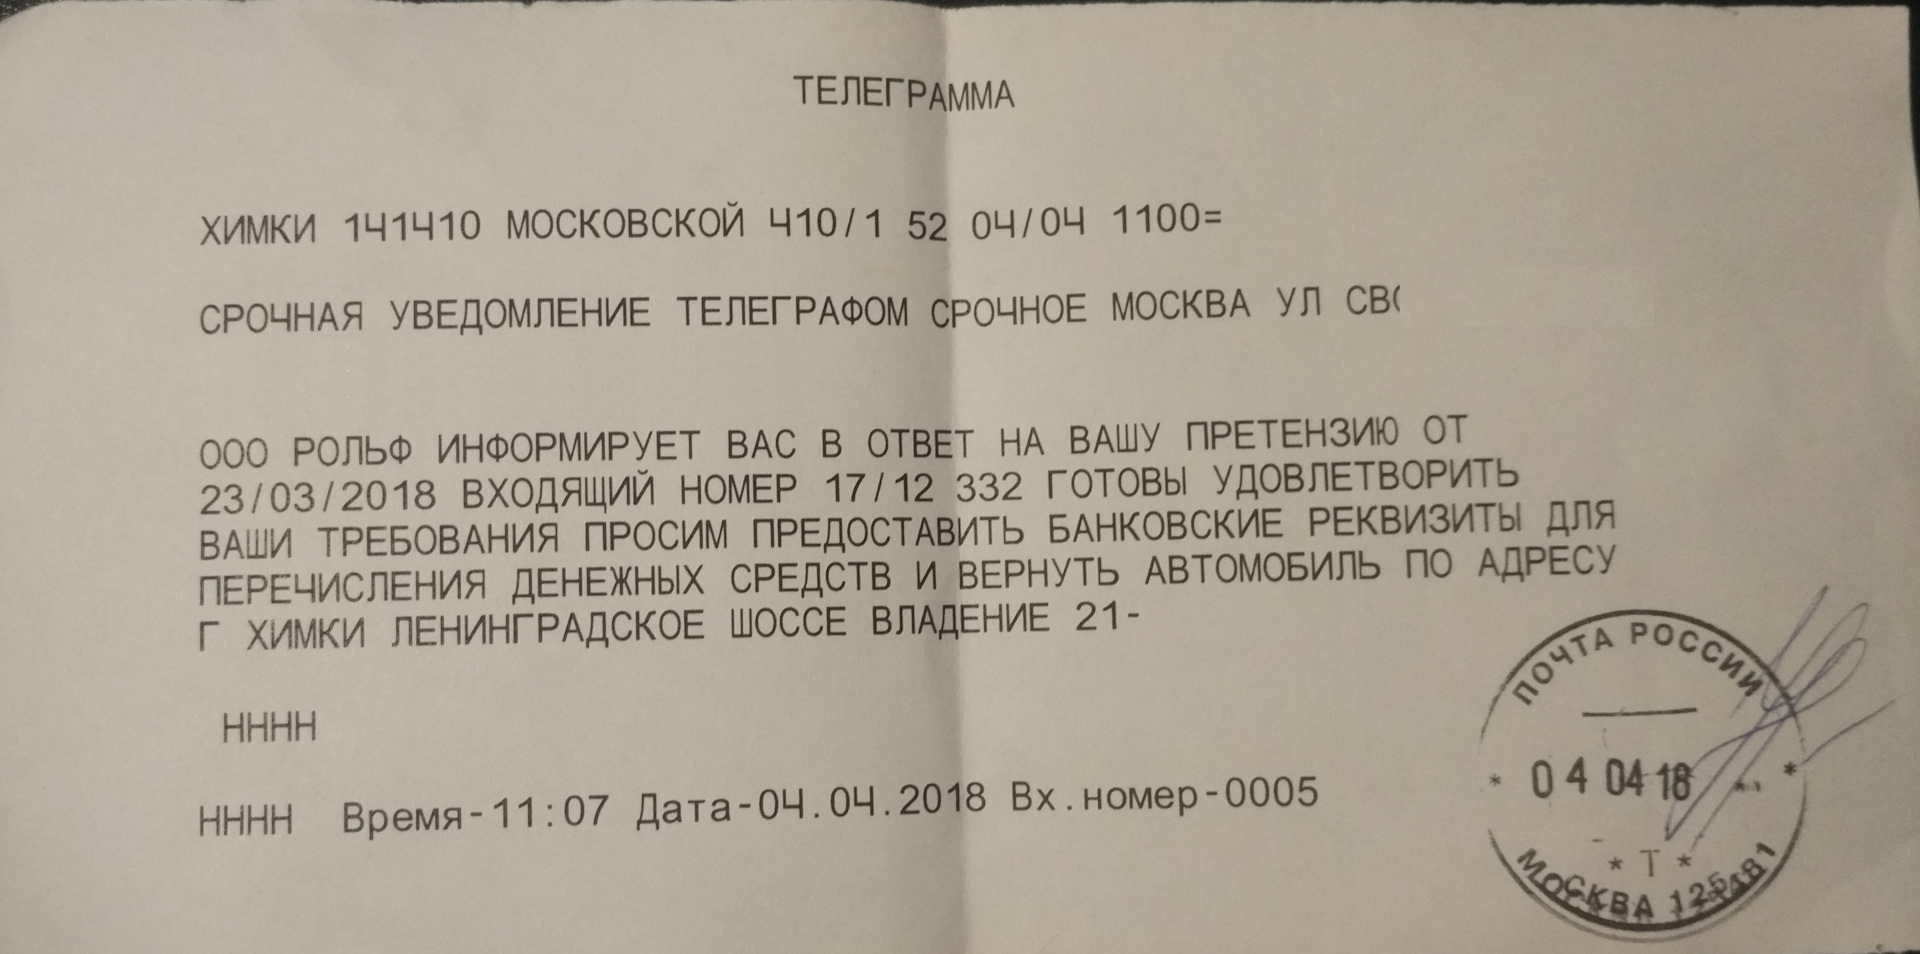 Как сделать телеграмму на русском фото 58